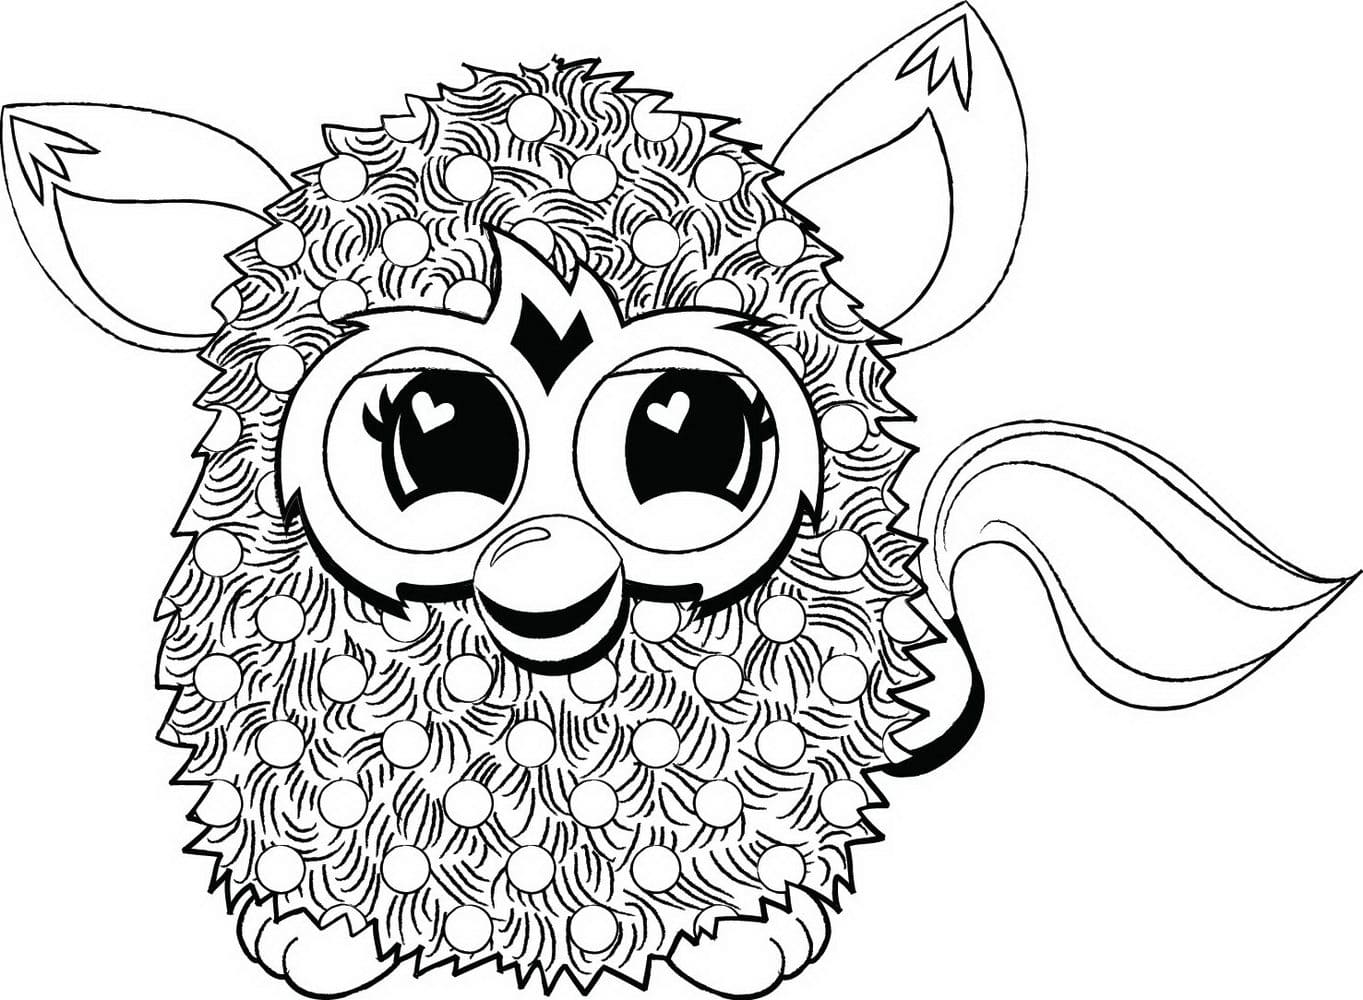 Coloriage Furby. Imprimer gratuitement des animaux fantastiques